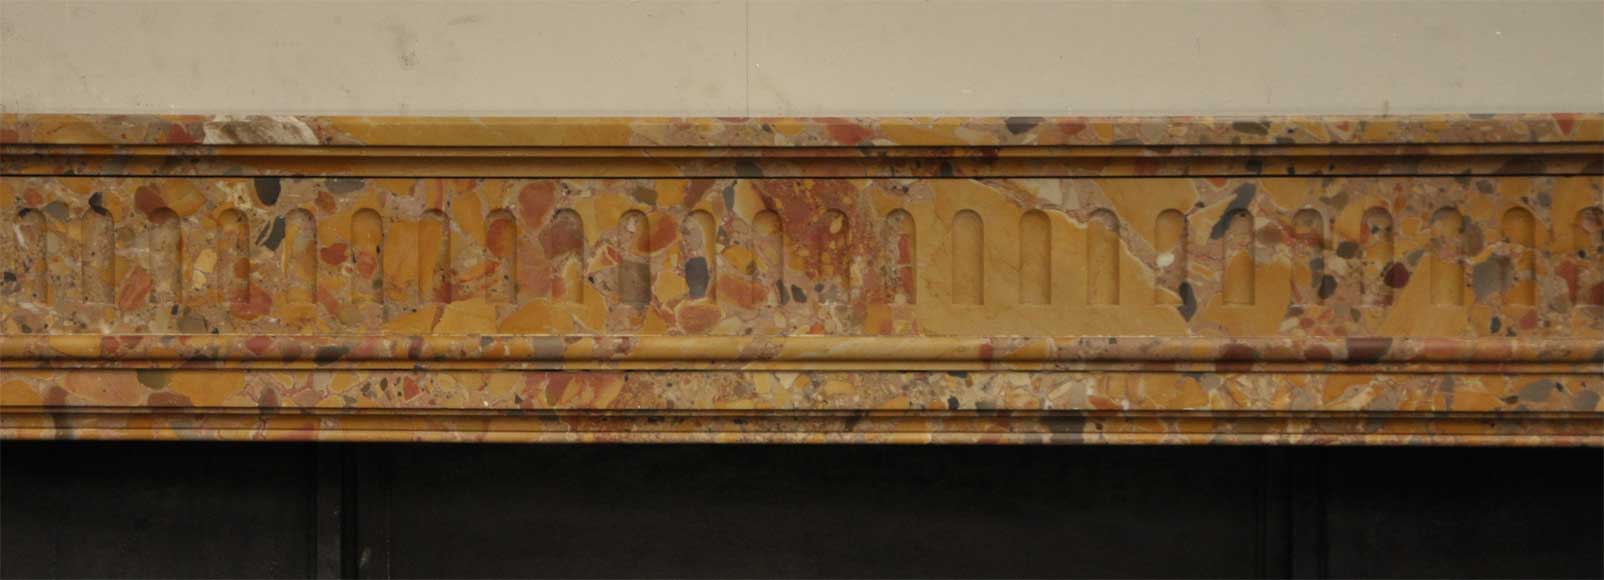 路易十六风格阿勒颇石古典壁炉-1